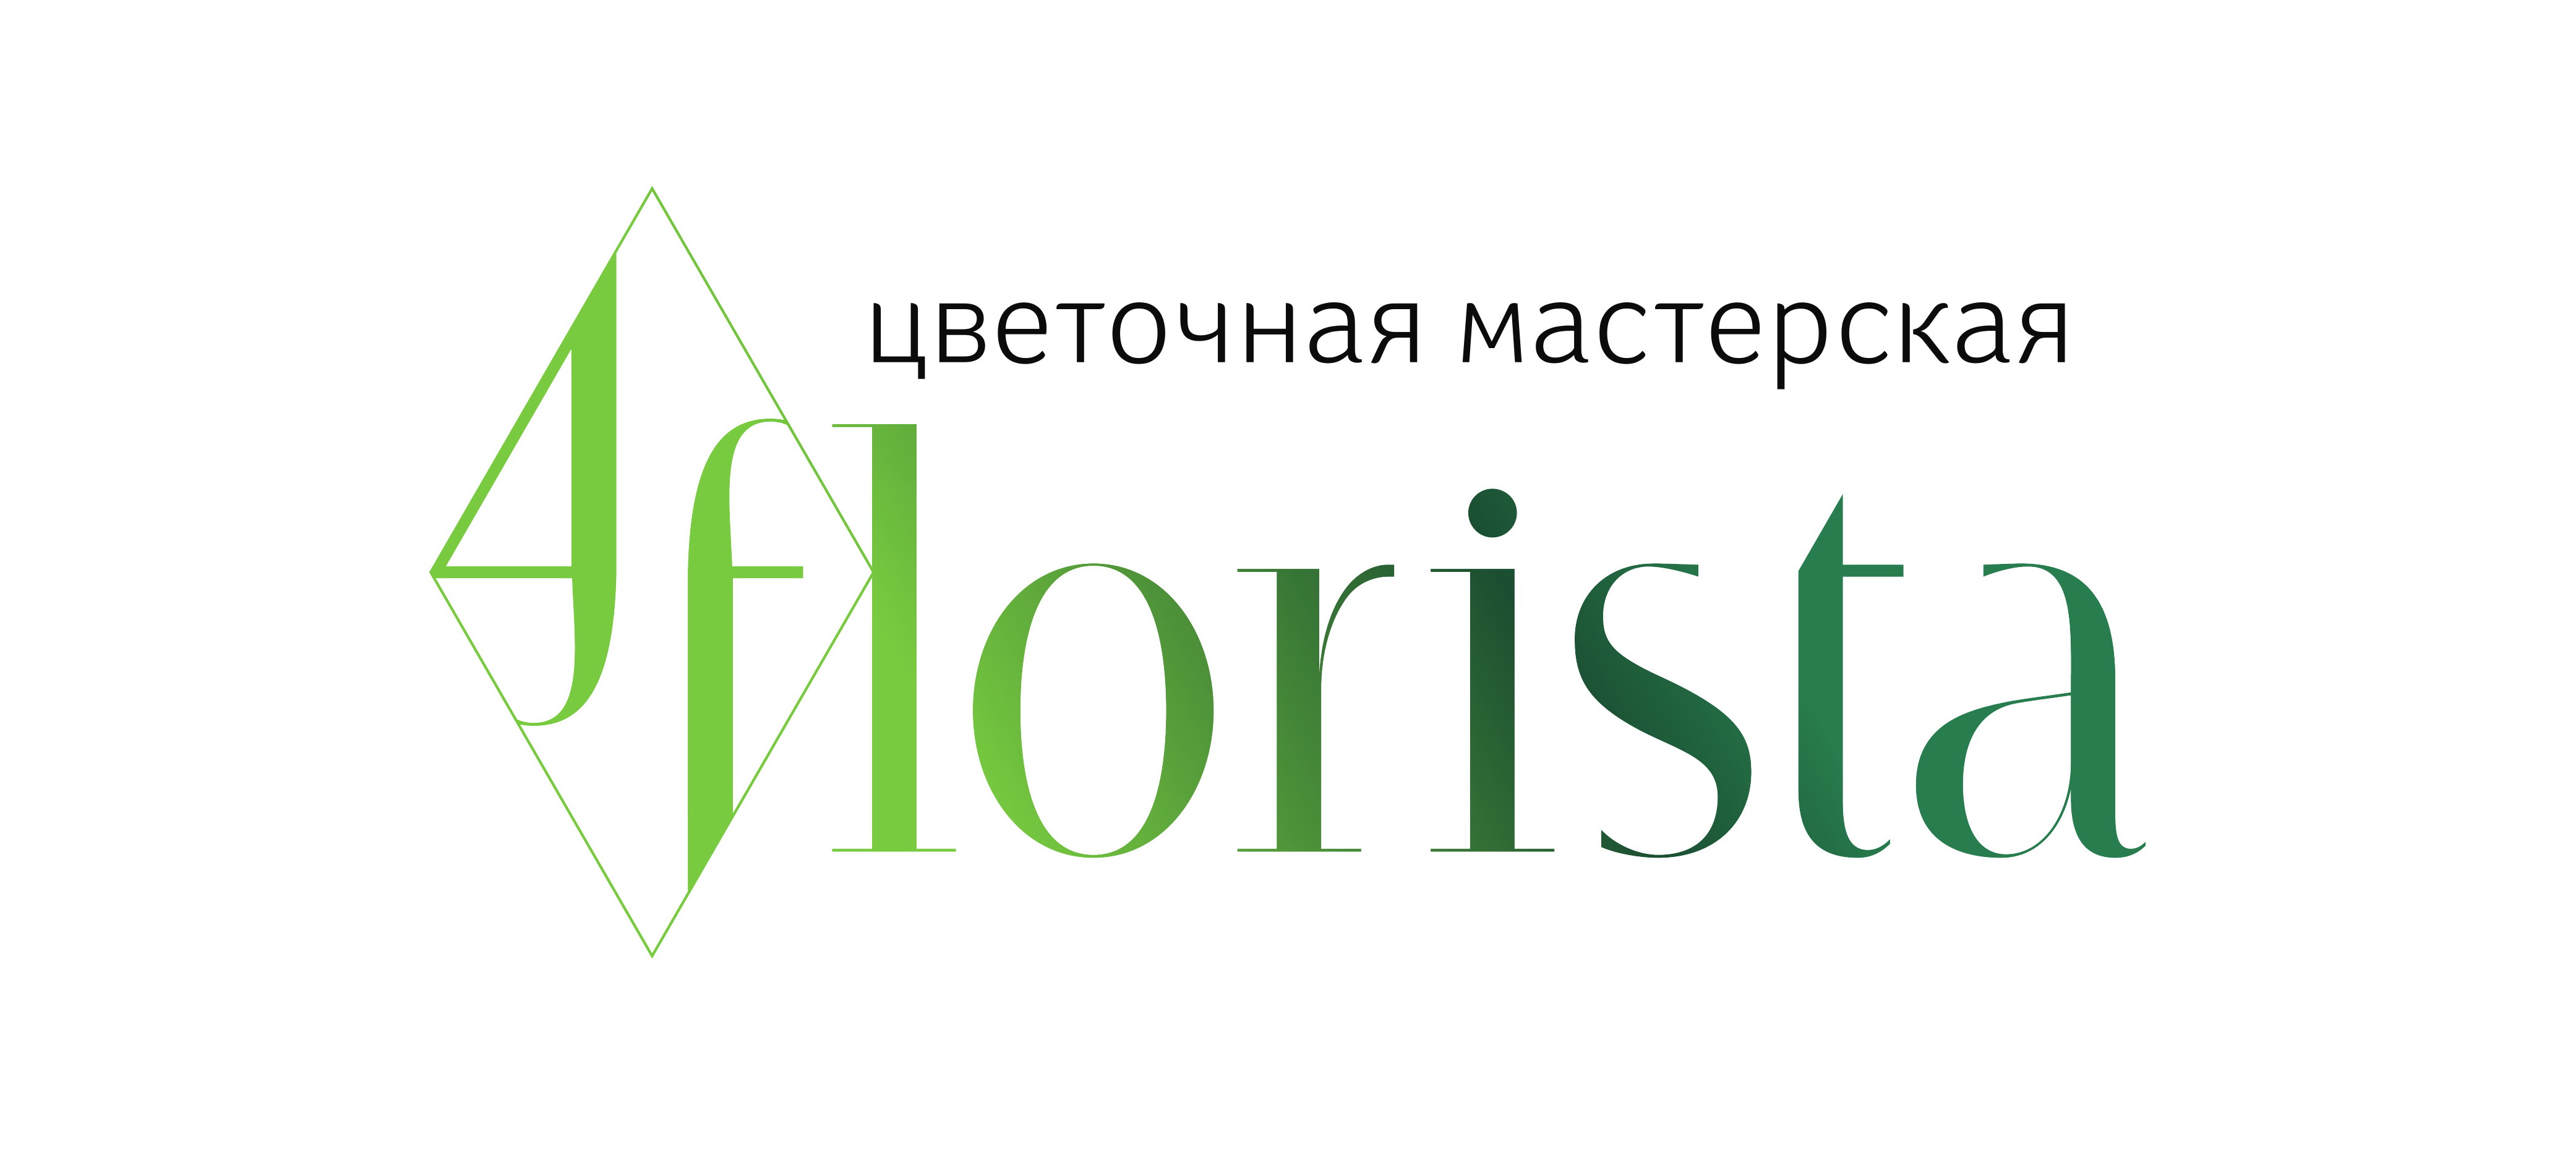 4Флориста - партнер выставки-презентации Содружества